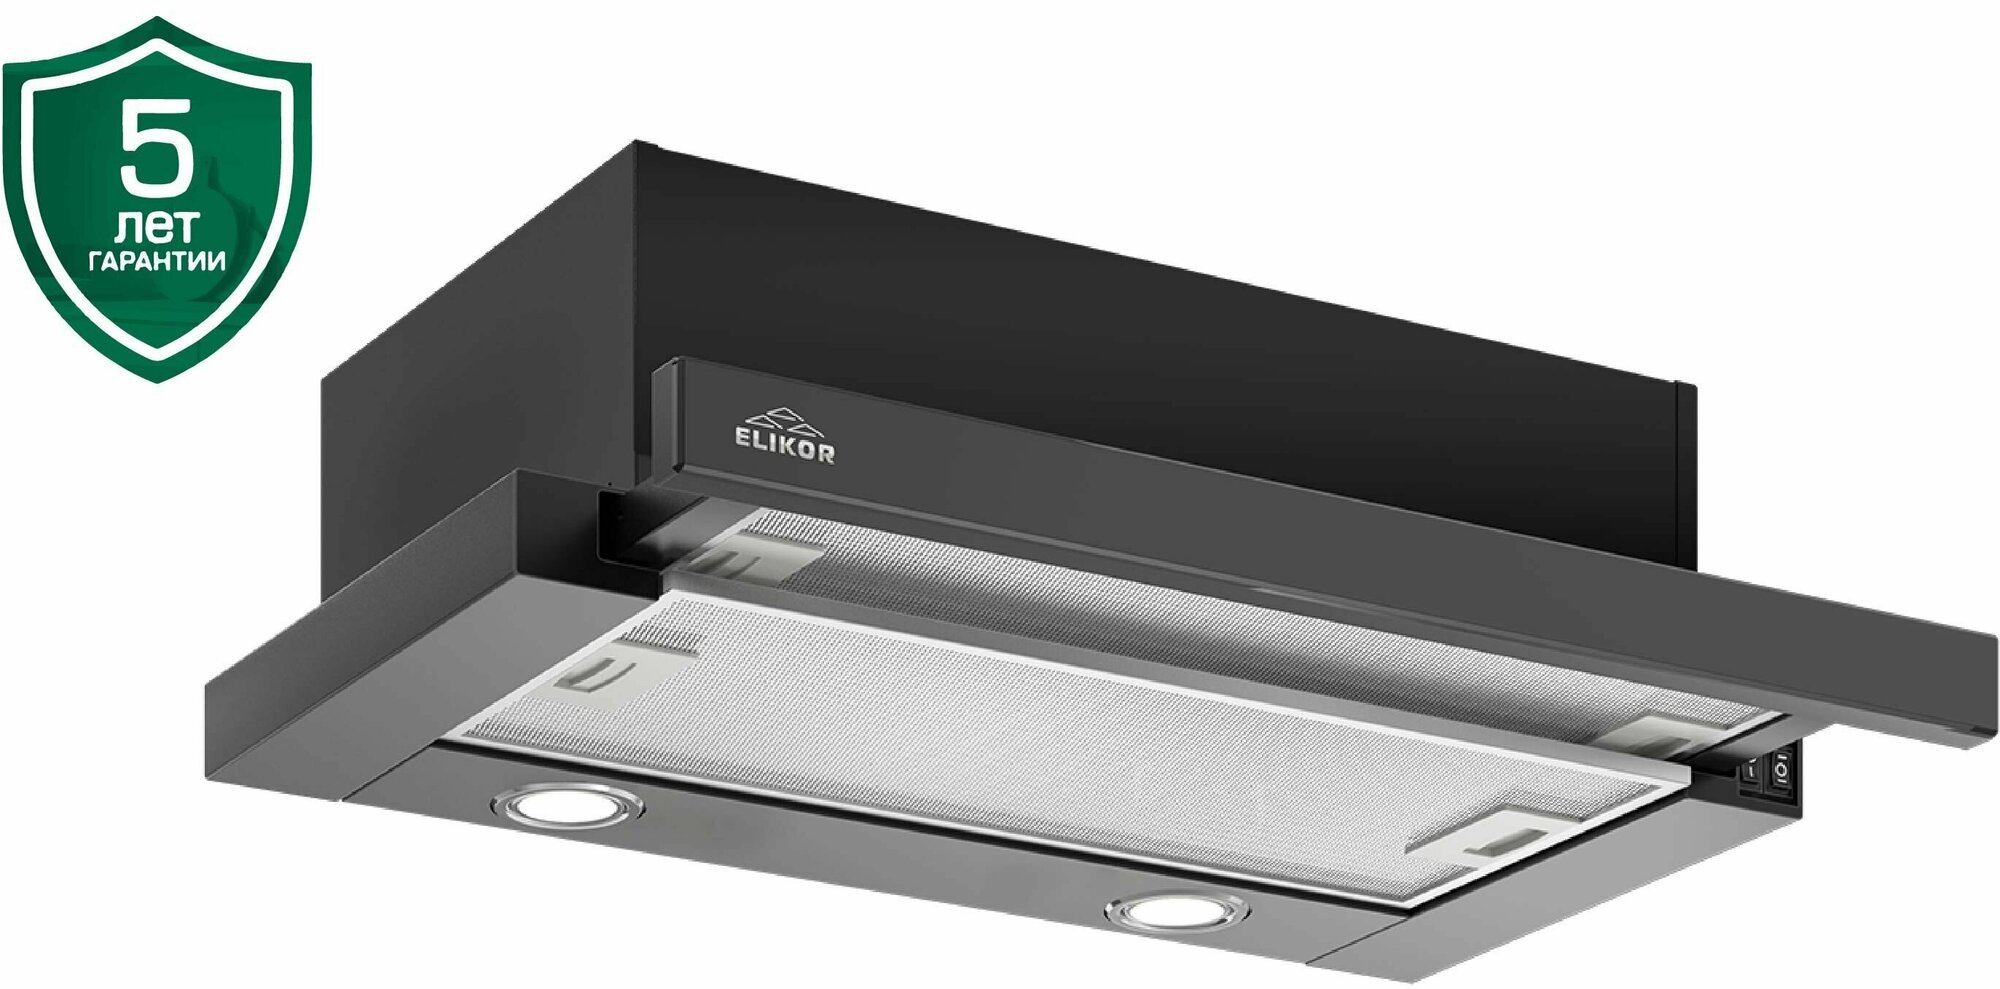 Кухонная вытяжка Elikor: Интегра GLASS 60П-650-В2Л черный/стекло черное